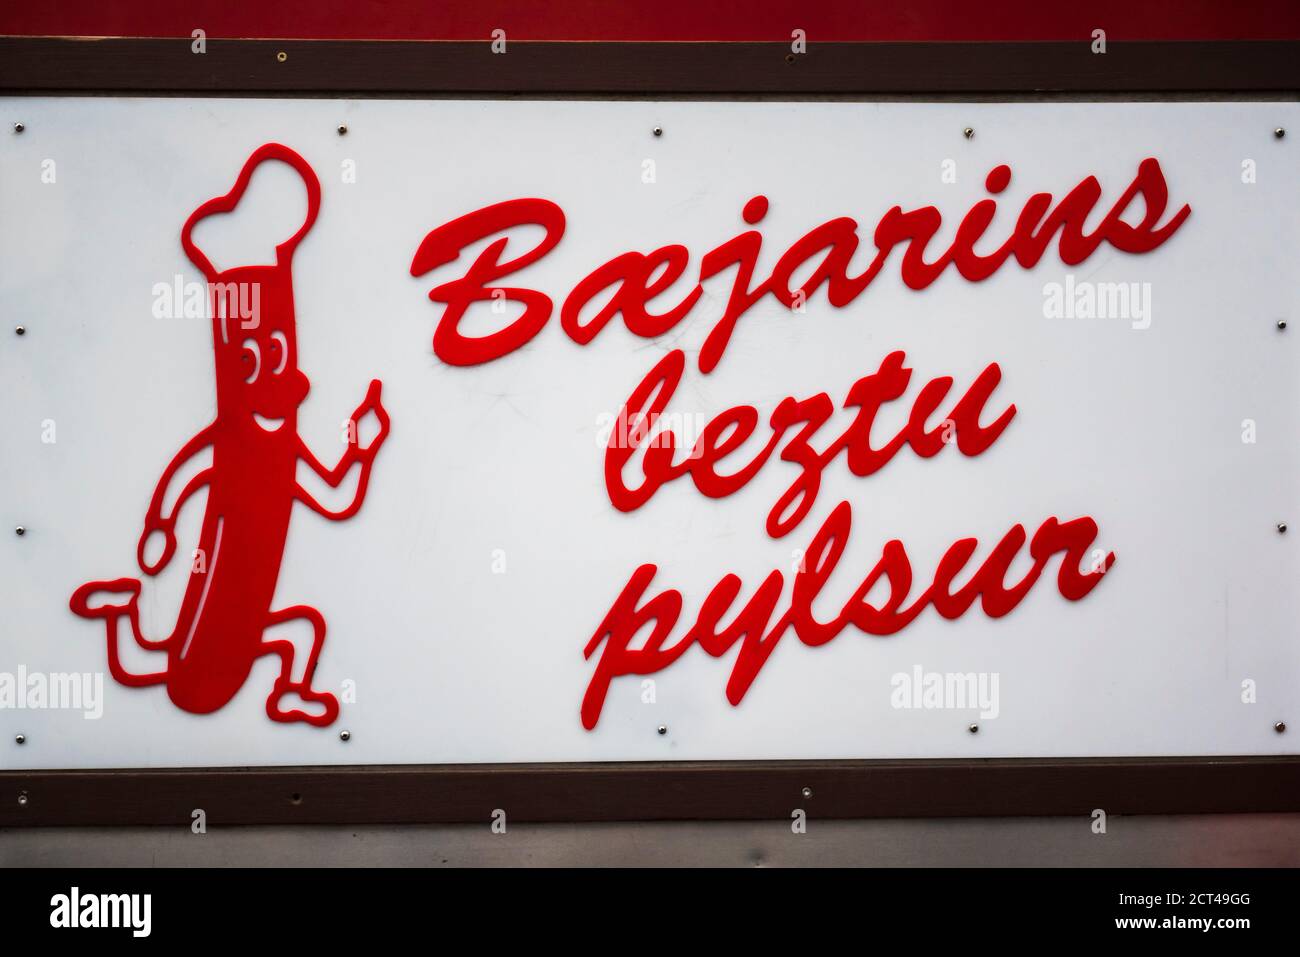 Baejarins Beztu Pylsur bekannt als der beste Hot Dog in Island, Reykjavik, Island, Europa Stockfoto